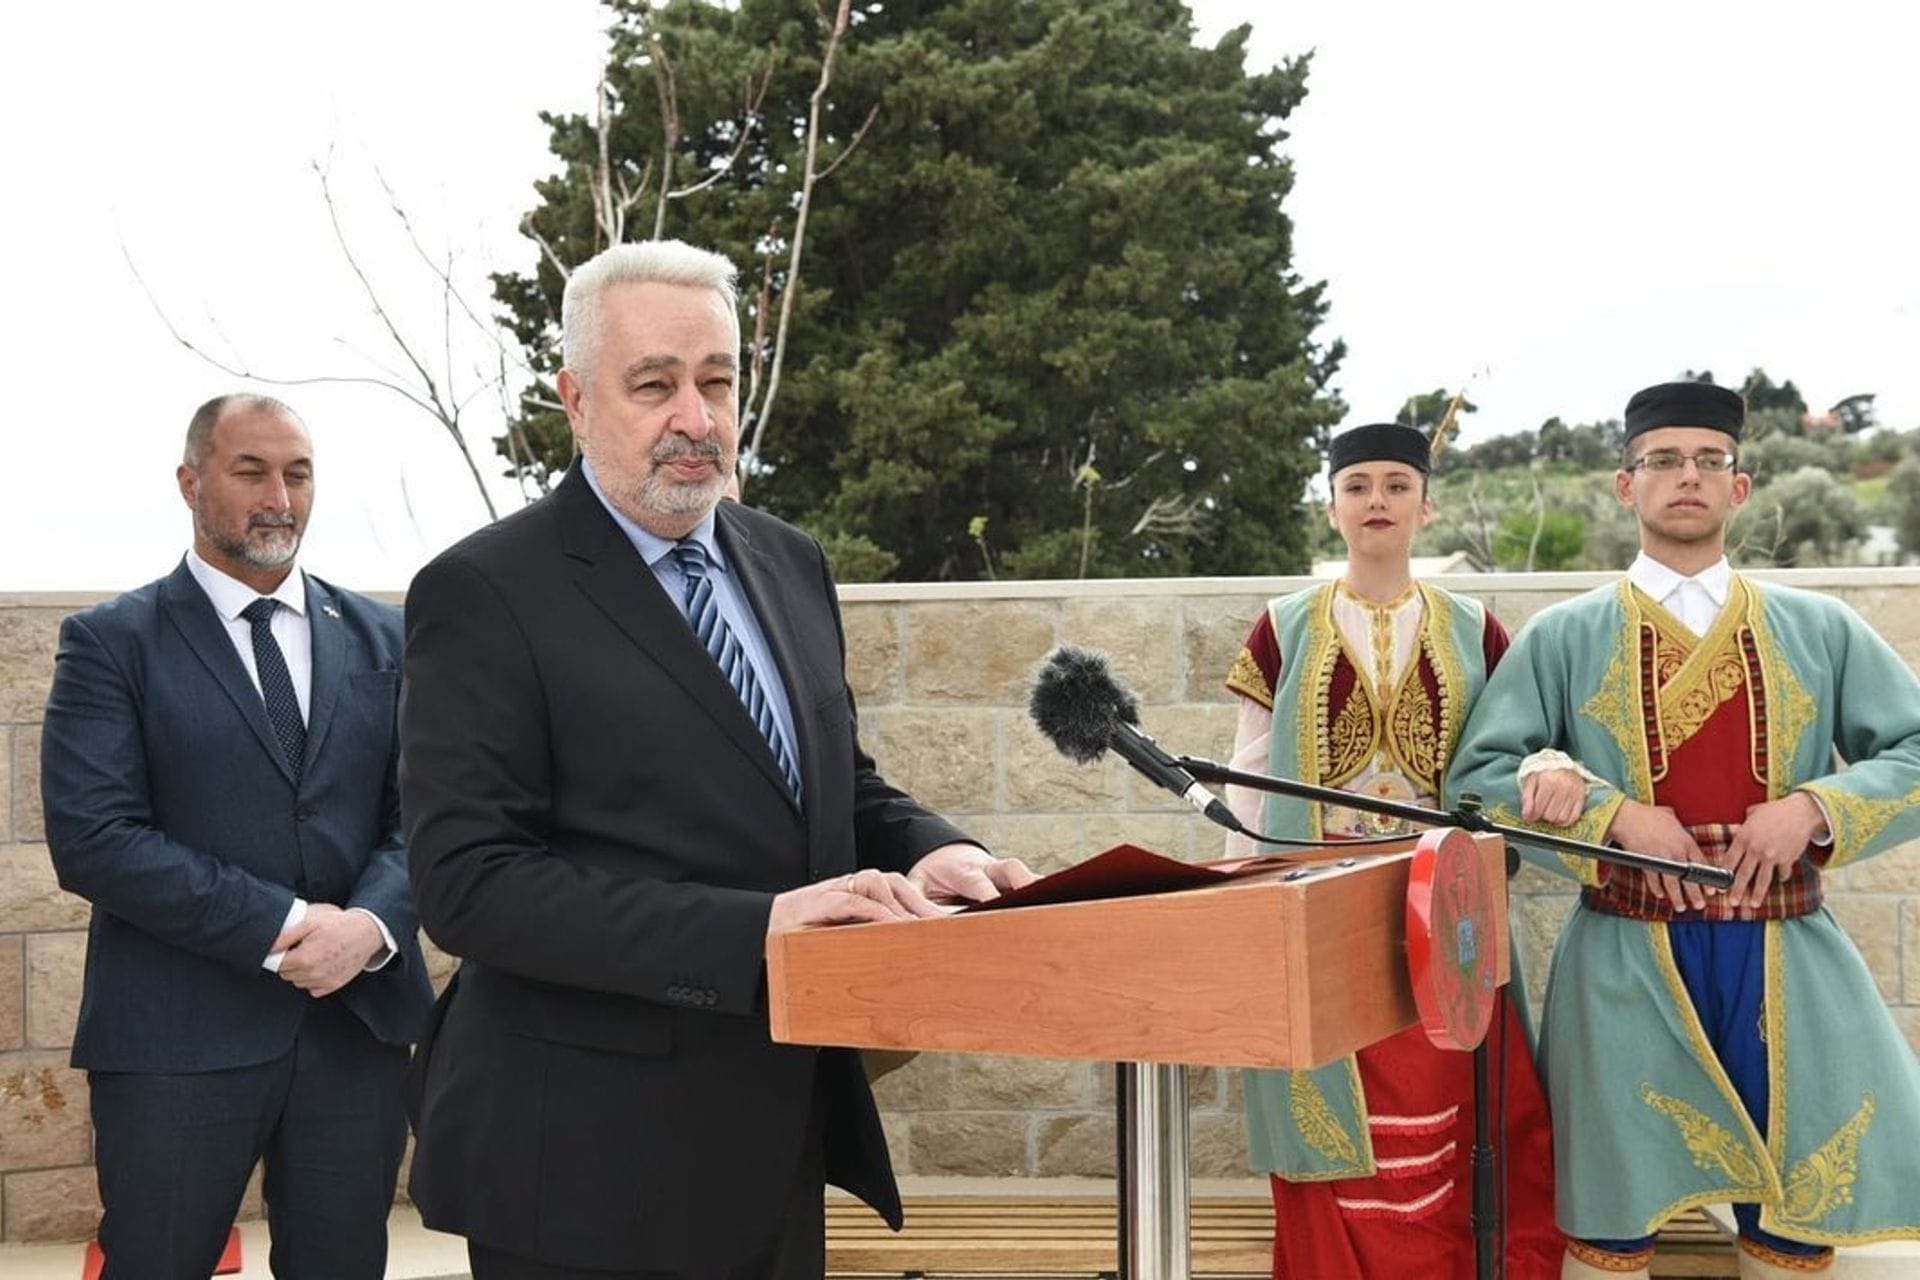 Premijer Krivokapić svečano otvorio Kuću maslina u Baru: Maslina oduvijek bila simbol mira, suživota i prijateljstva u Baru i Crnoj Gori